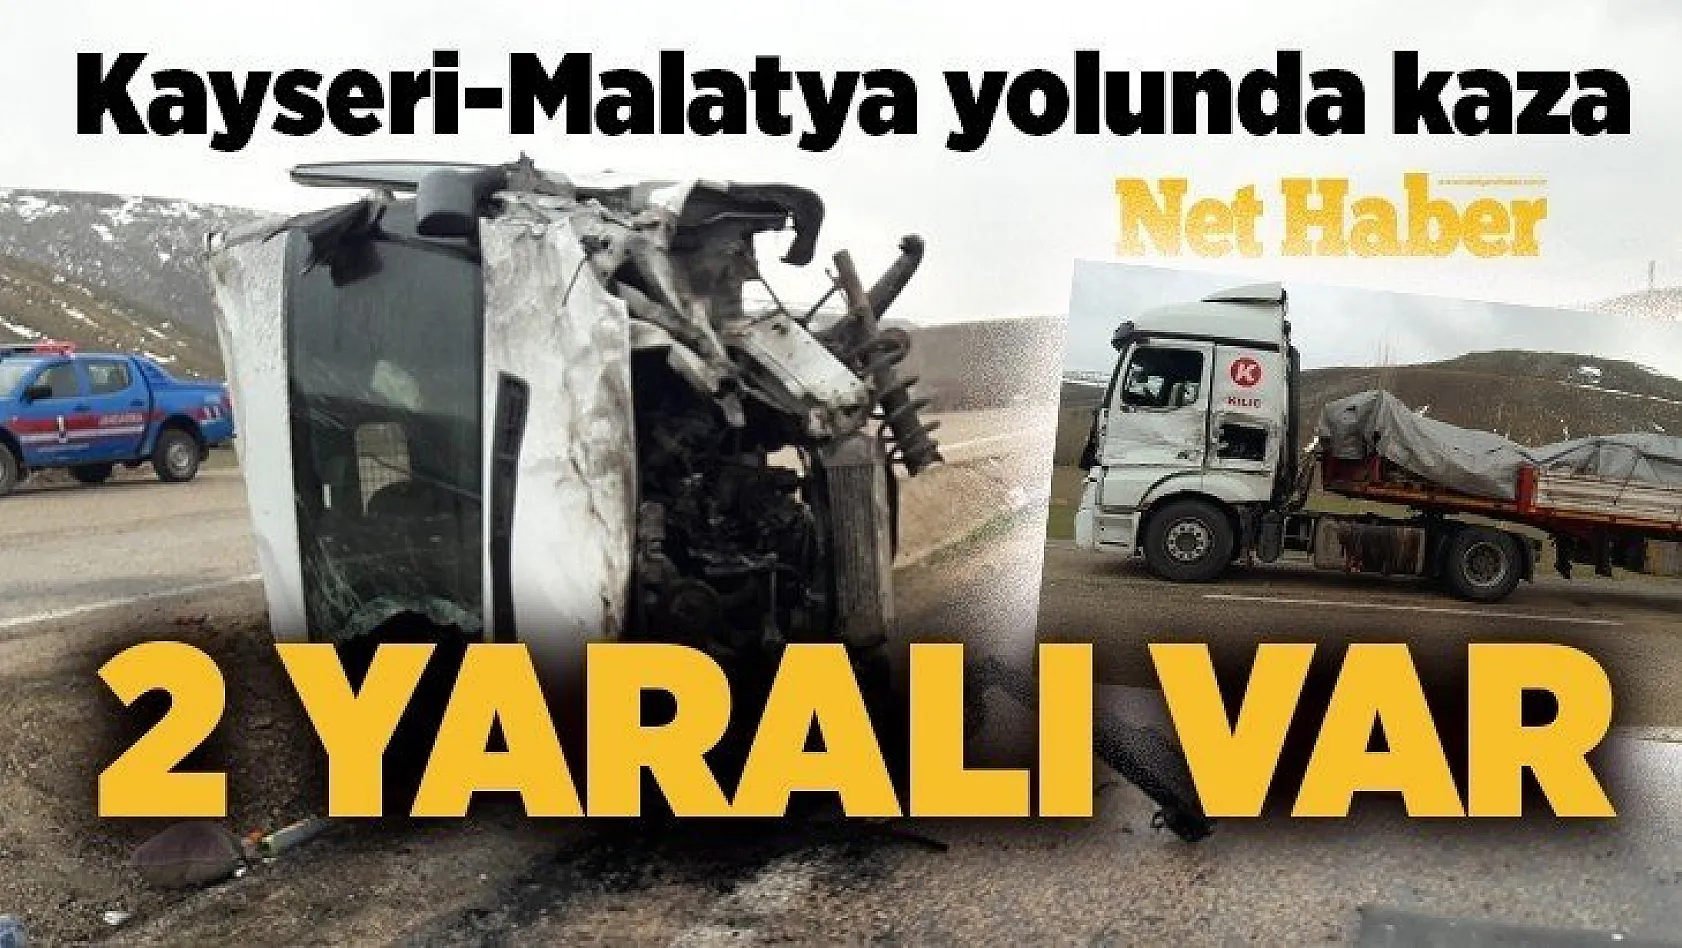 Kayseri-Malatya yolunda kaza